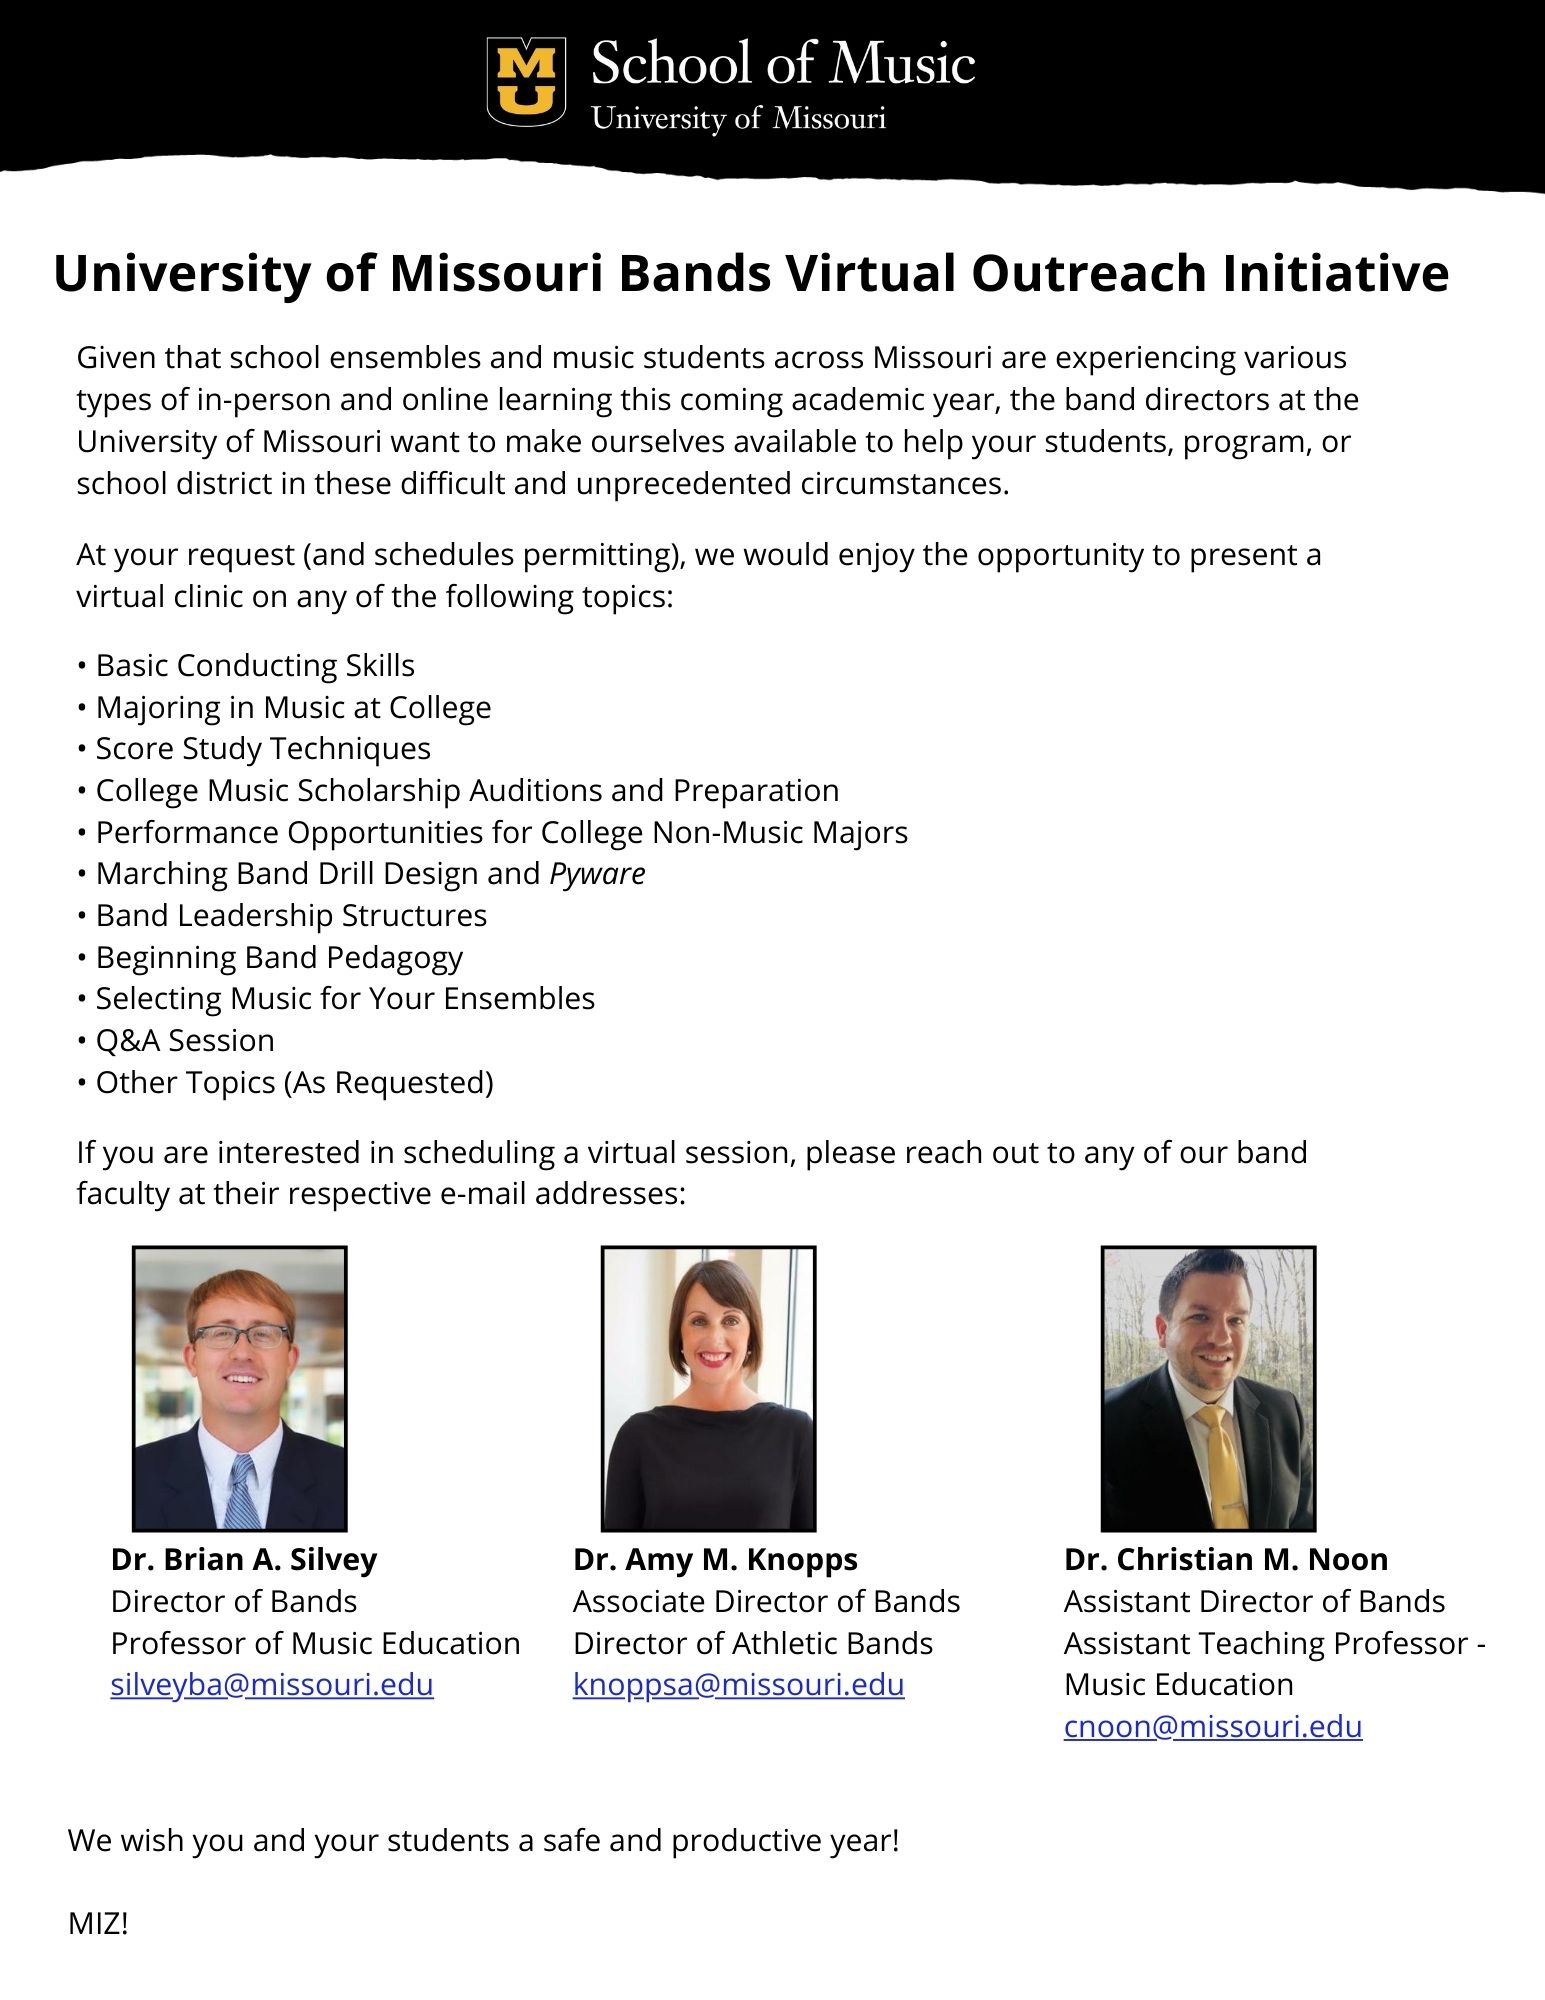 MU Bands Virtual Outreach Initiative